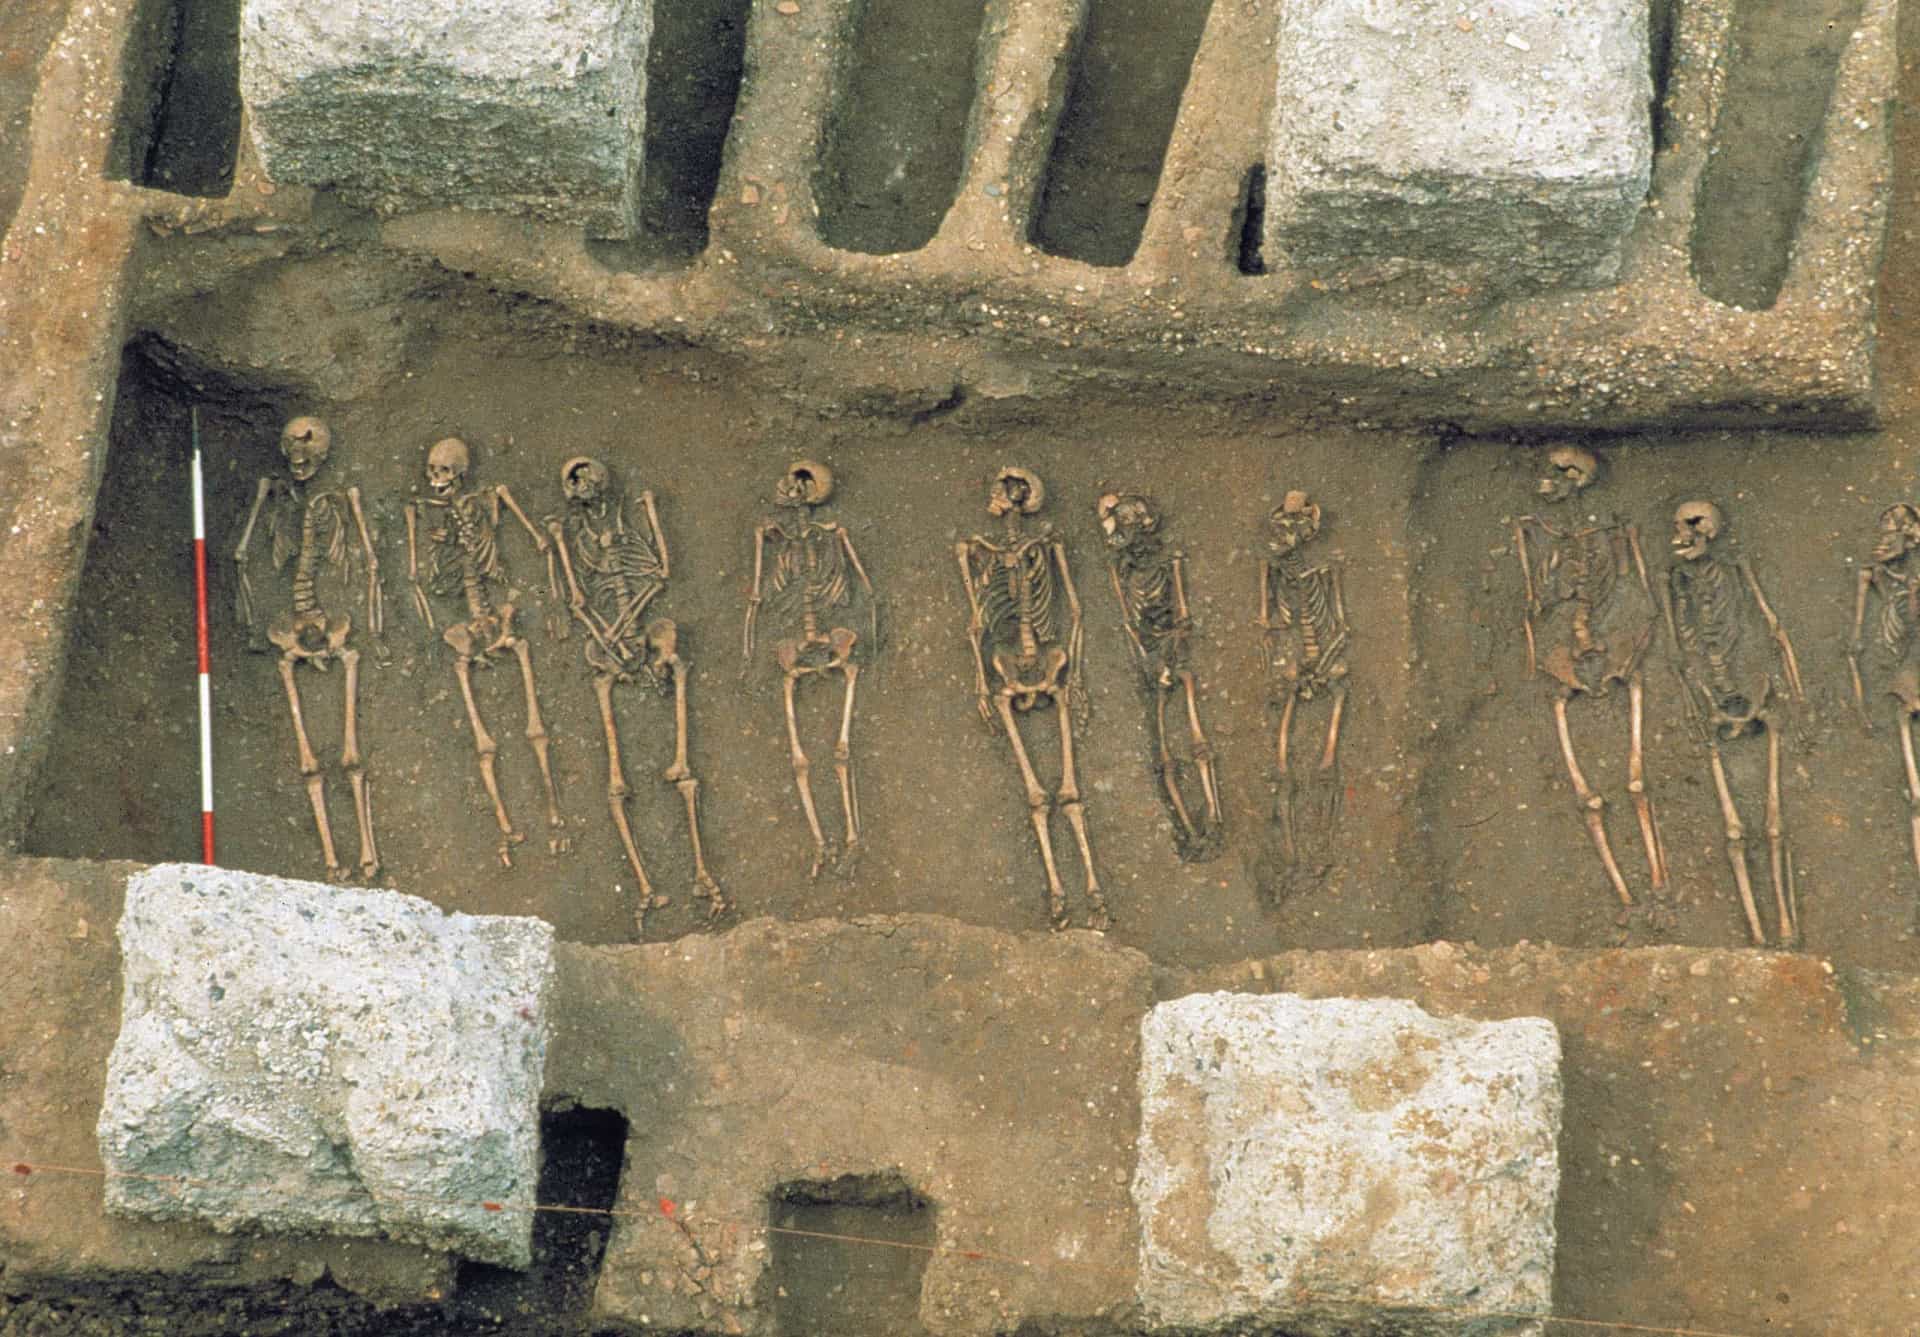 <p>Elders tijdens dezelfde opgravingen werd een gemeenschappelijk graf ontdekt. In plaats van massaal in een pestput te zijn gegooid, waren deze slachtoffers zorgvuldig naast elkaar gelegd. Ze lijken daarmee een fatsoenlijke begrafenis te hebben gehad. </p>